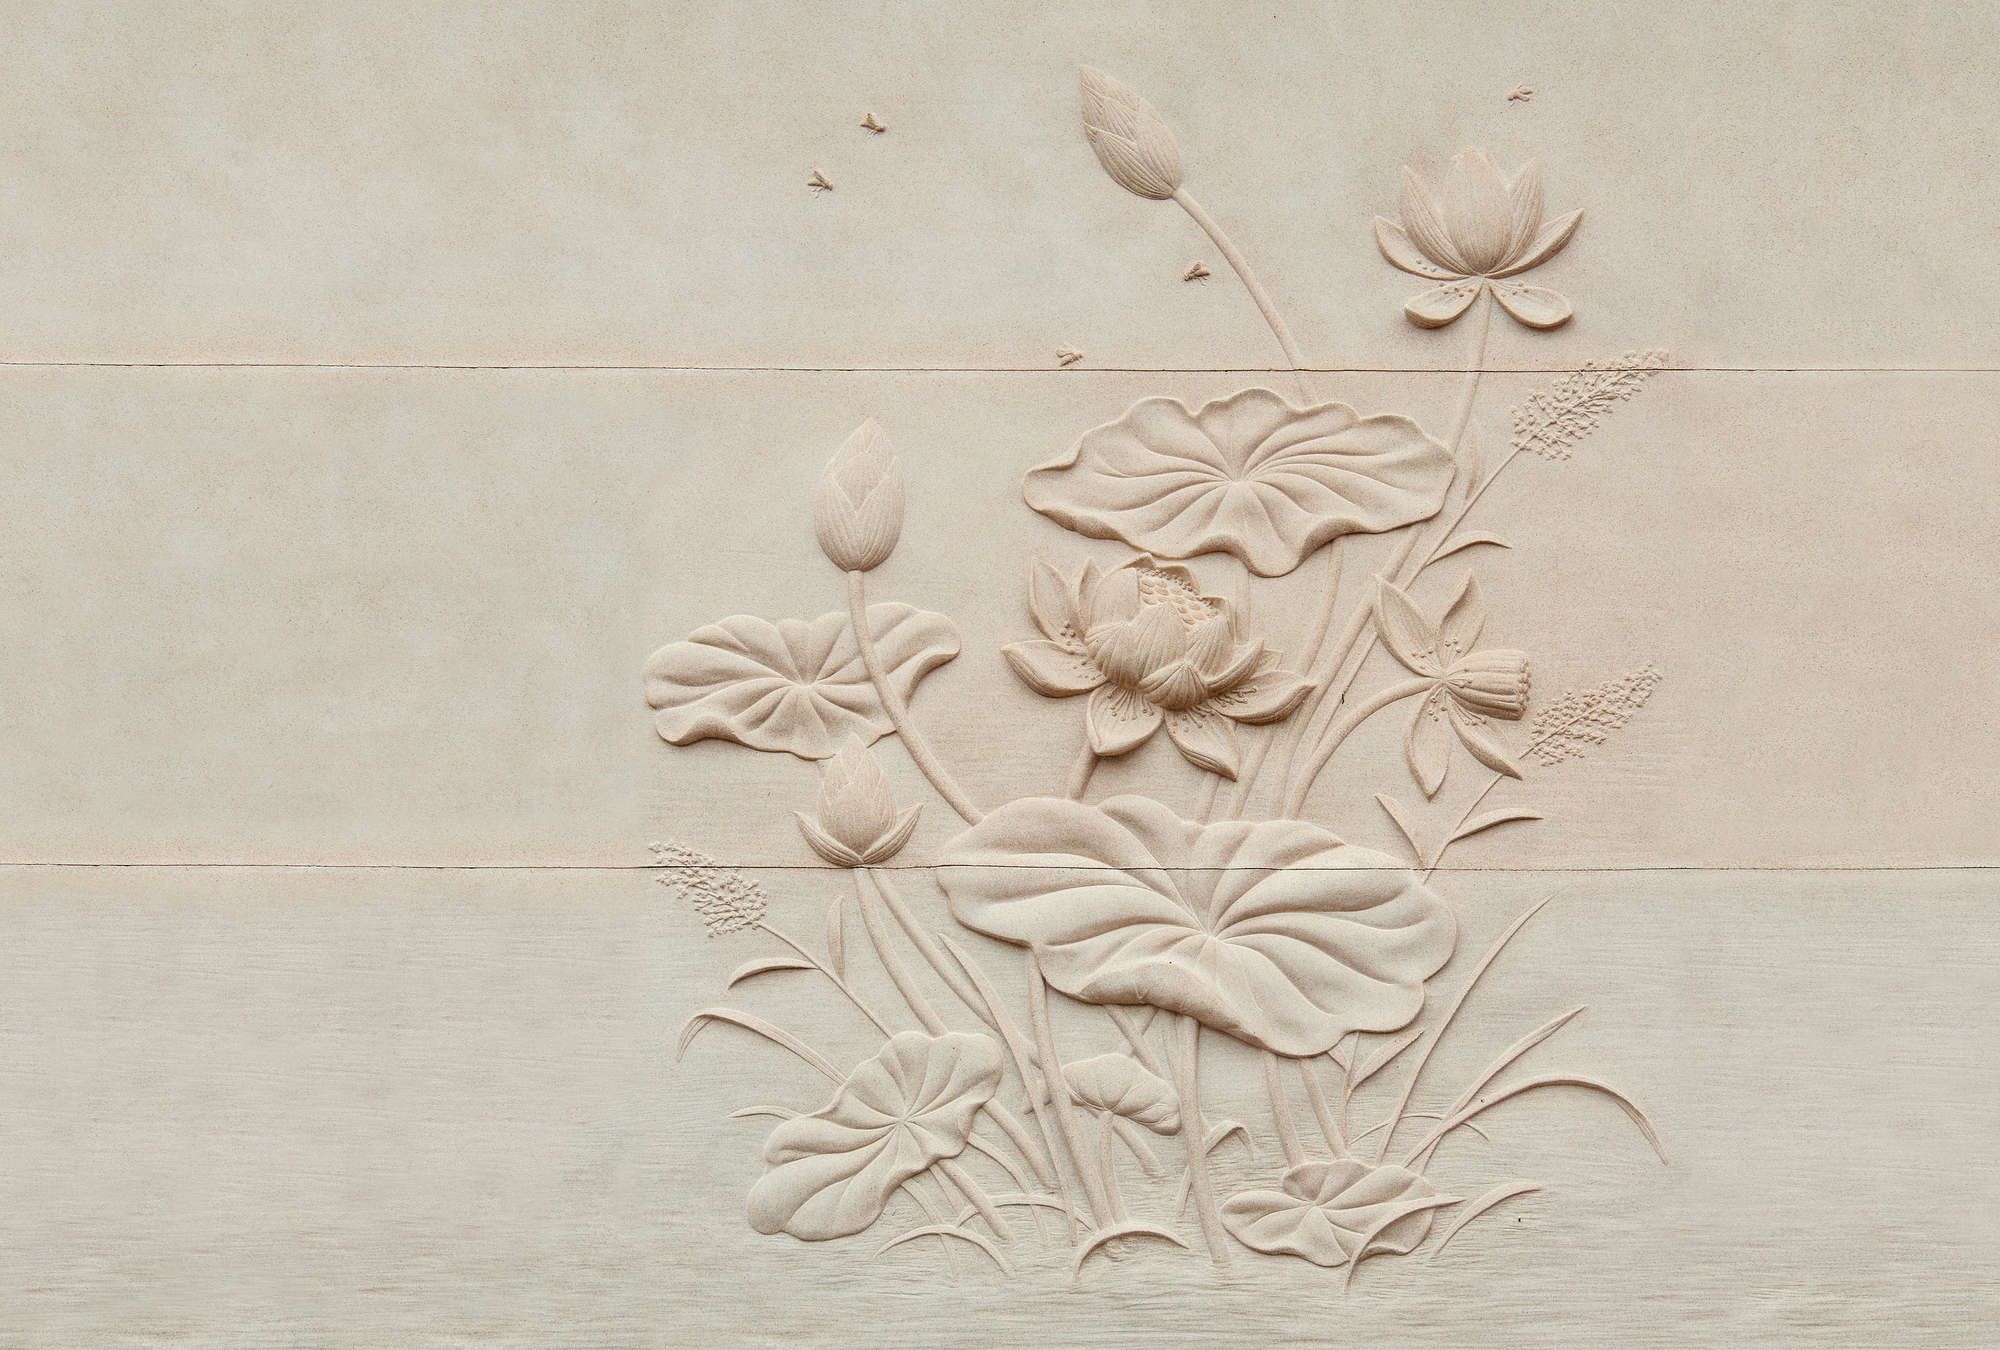             Fotomurali »fiore« - Rilievo floreale su struttura in cemento - Materiali non tessuto opaco e liscio
        